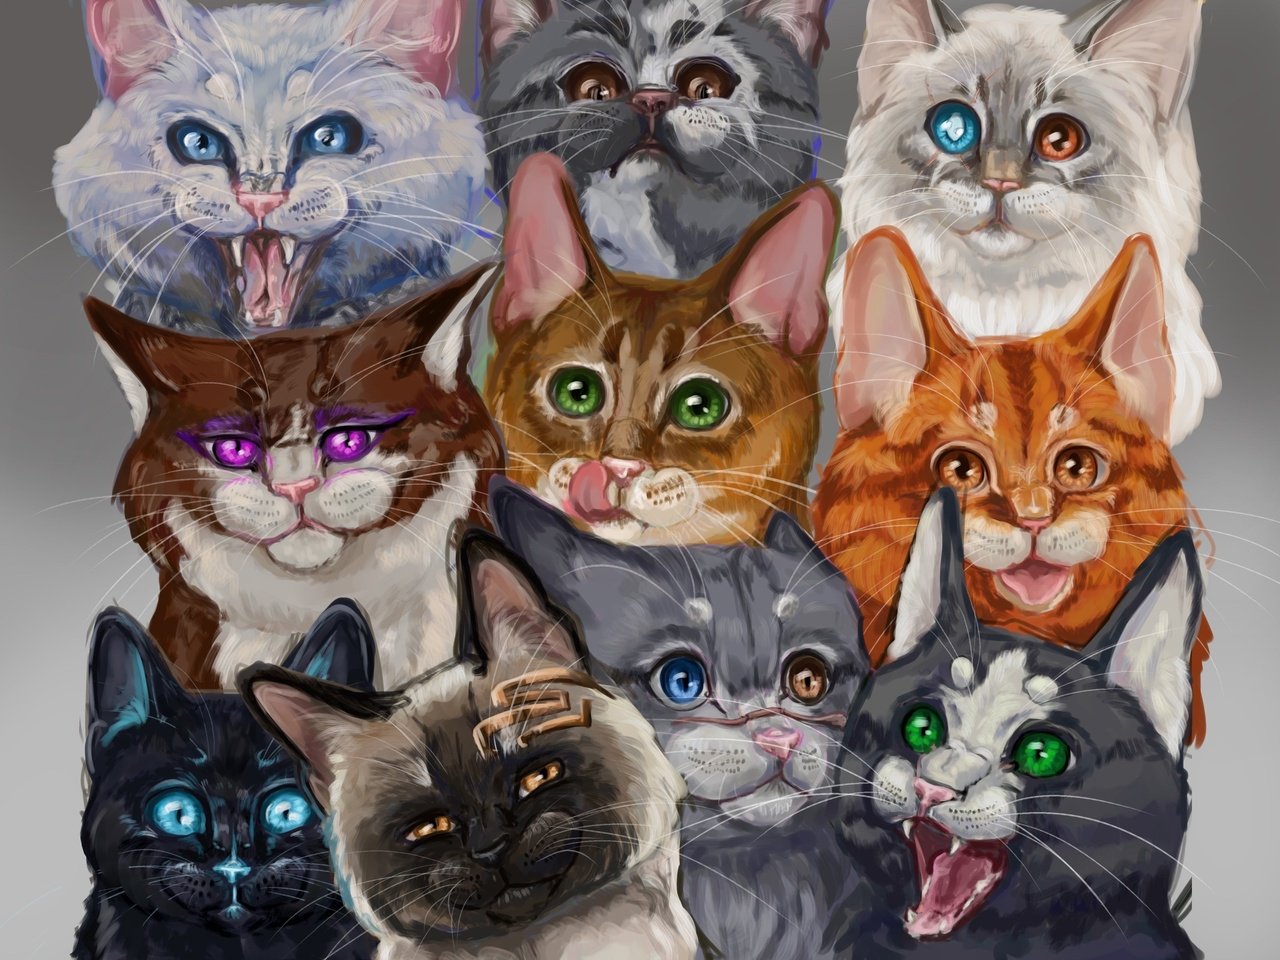 Напротив каждой кошки по три кошки. 3 Кошки арт. Картинки три кошки красивые оригинальные. Картинки элегантные 3 кошки. Изо три кошки.